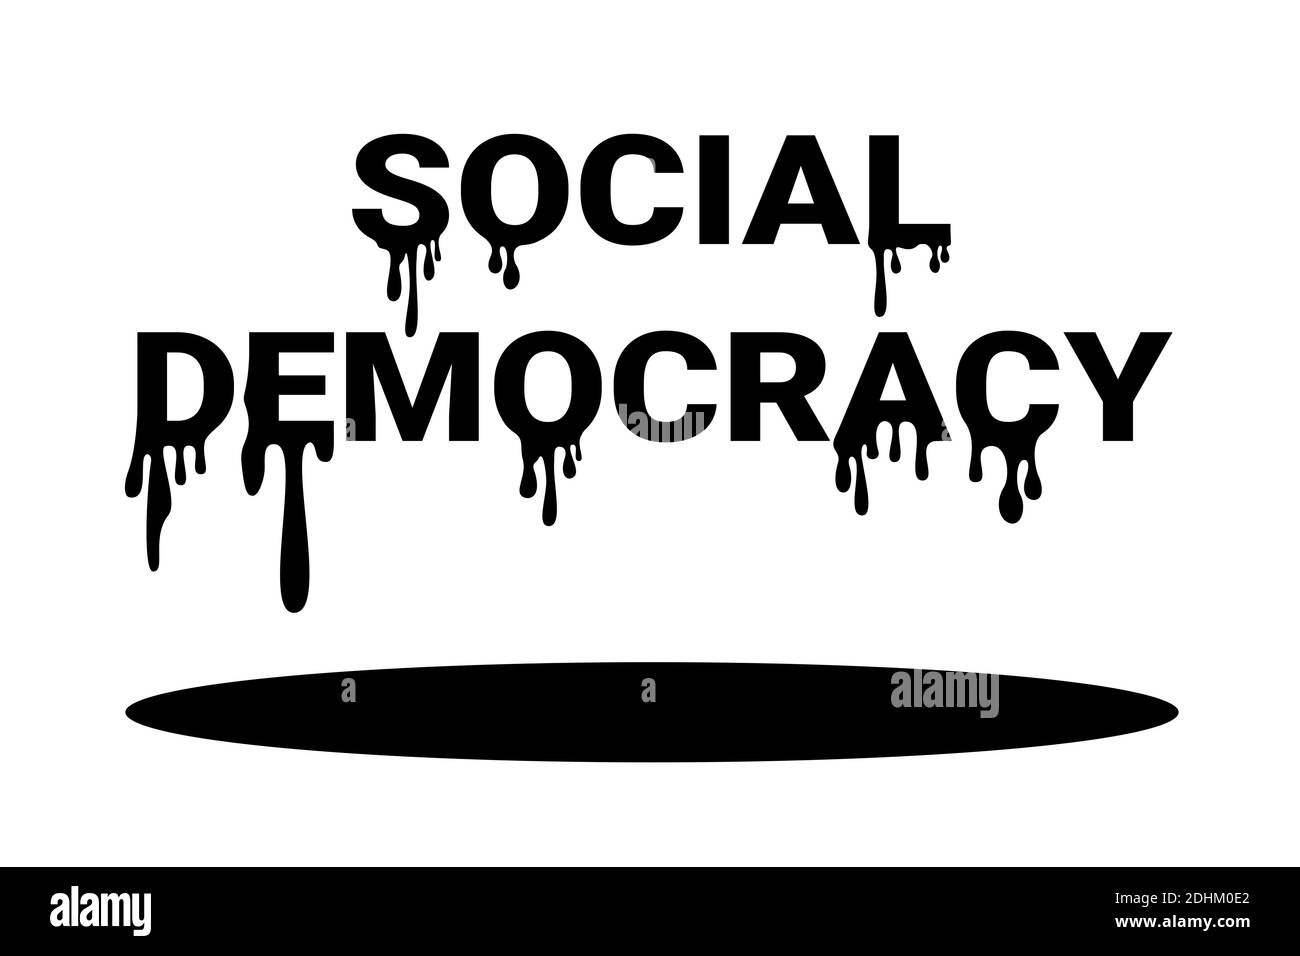 Die Sozialdemokratie schmilzt - die linke politische Partei des demokratischen Sozialismus und des Wohlfahrtsstaates schmilzt - Probleme und Probleme. Politische Niederlage. Vektor Stockfoto